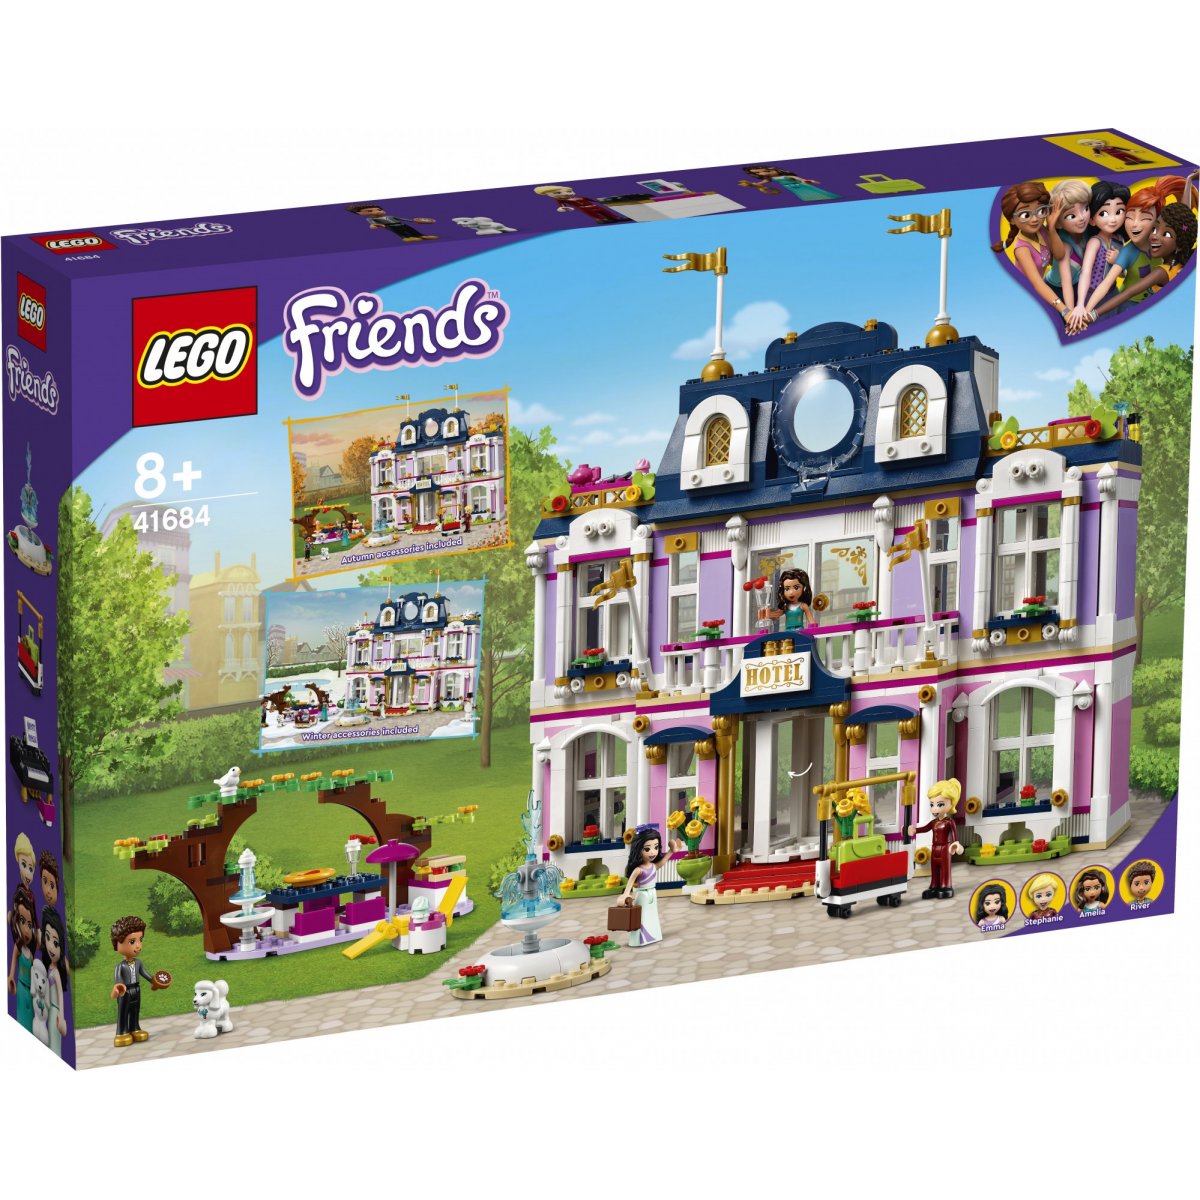 LEGO Friends Heartlake City Grand 41684 Multi Bedste pris | Heaven4kids.dk